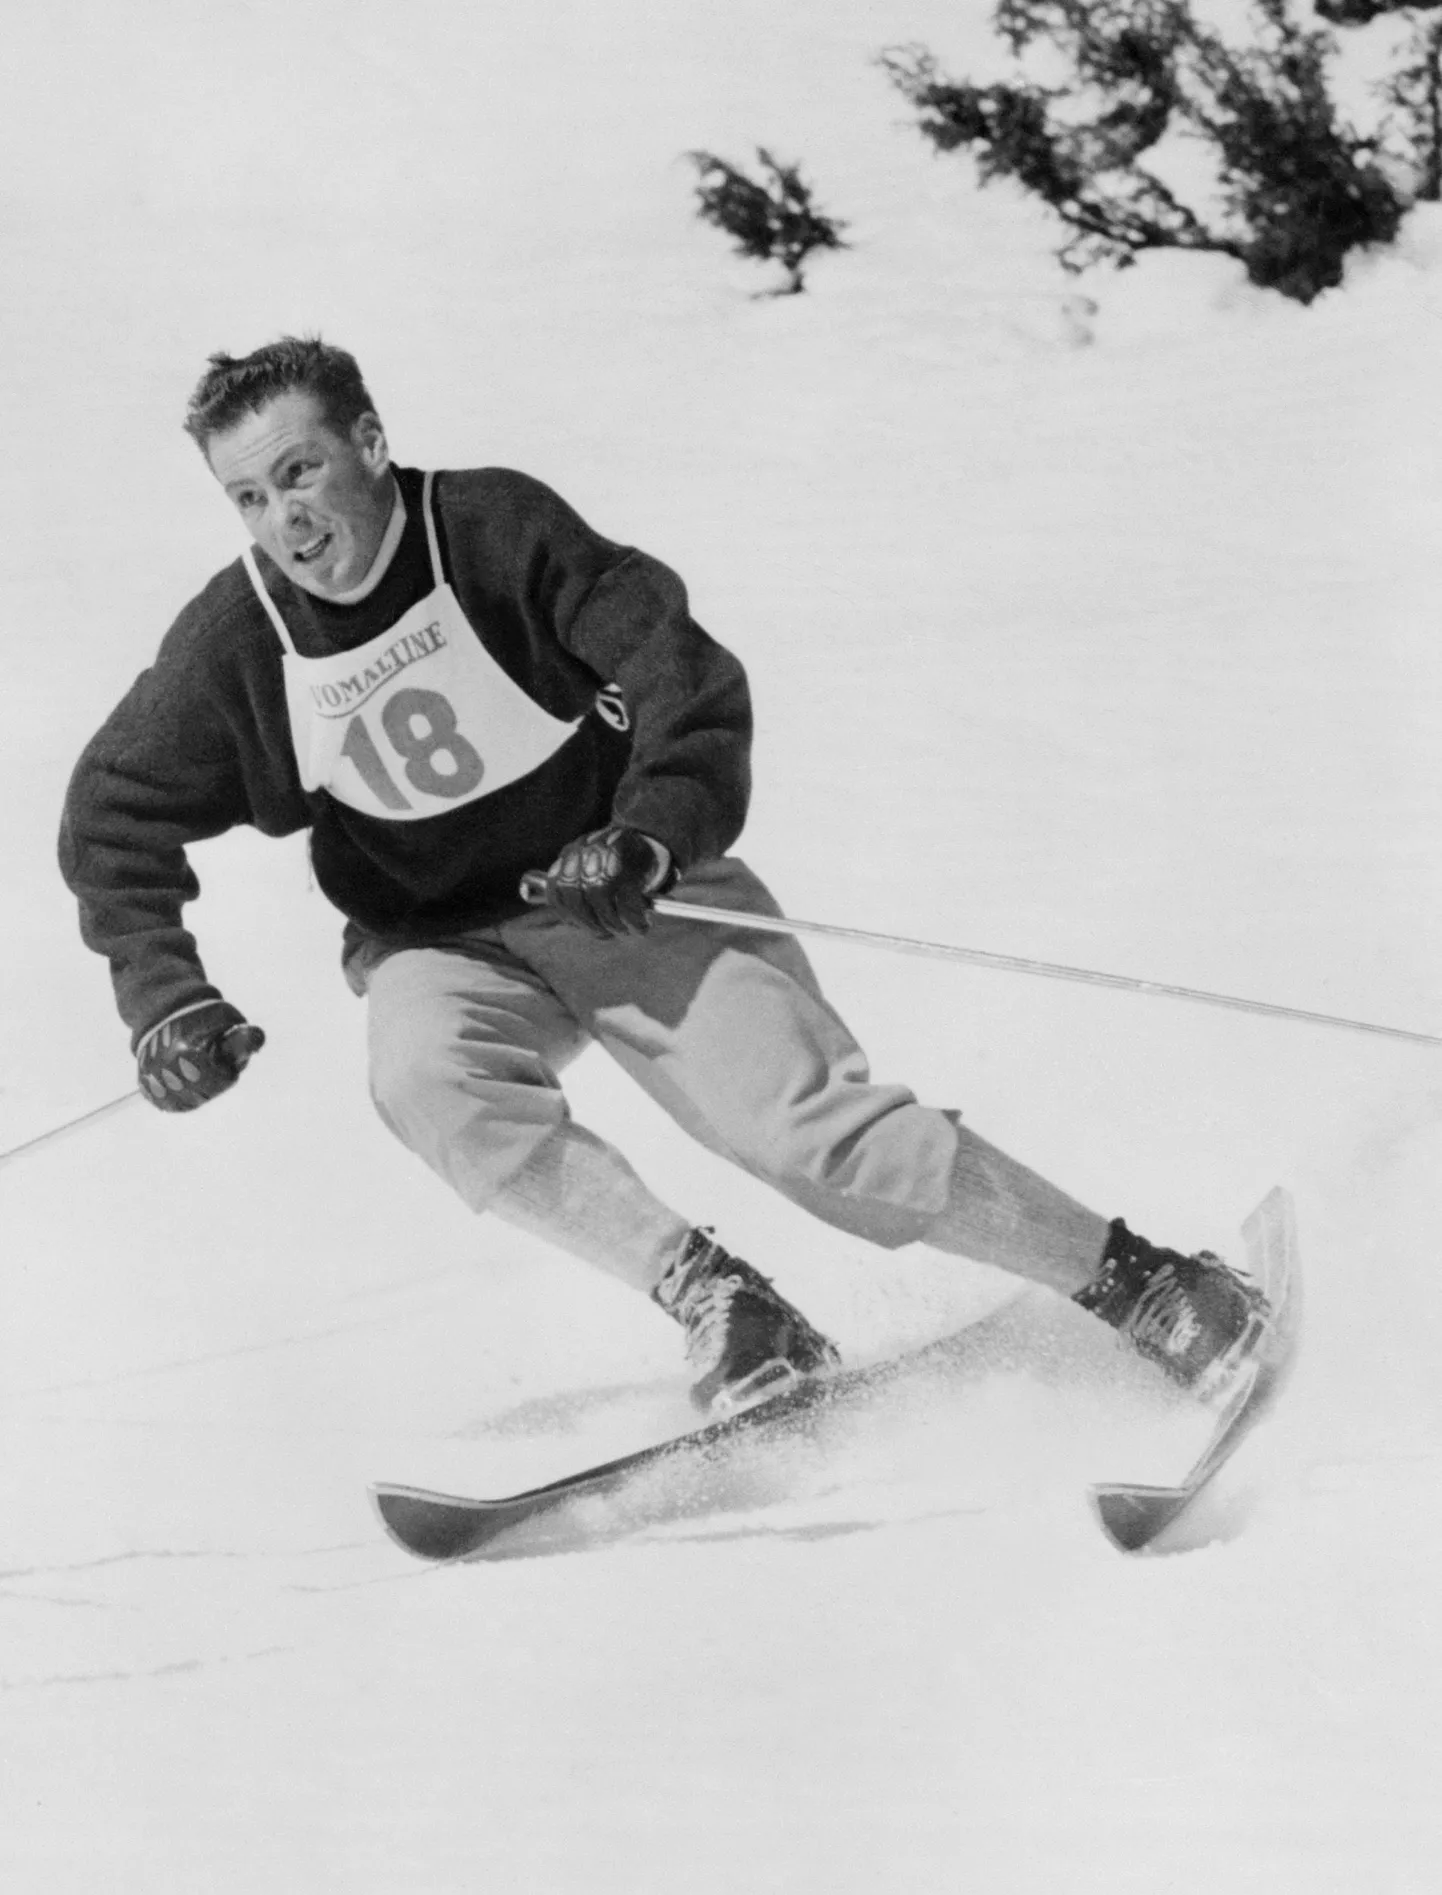 Jean Vuarnet 1960. aasta olümpiamängudel Squaw Valleys.